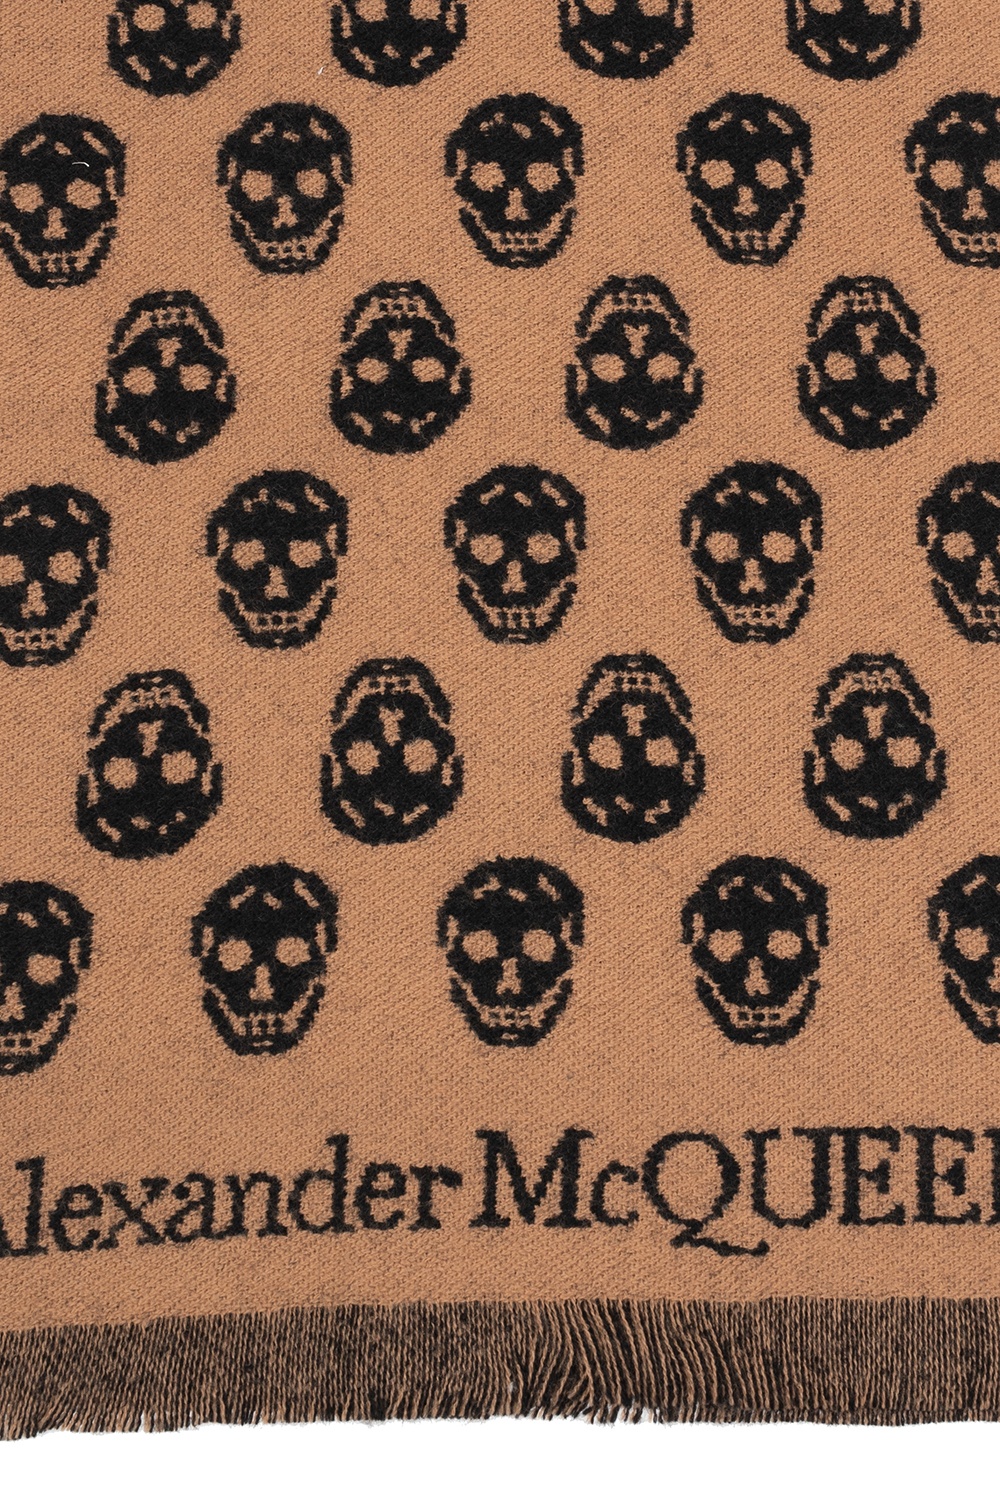 Alexander McQueen Szal z logo